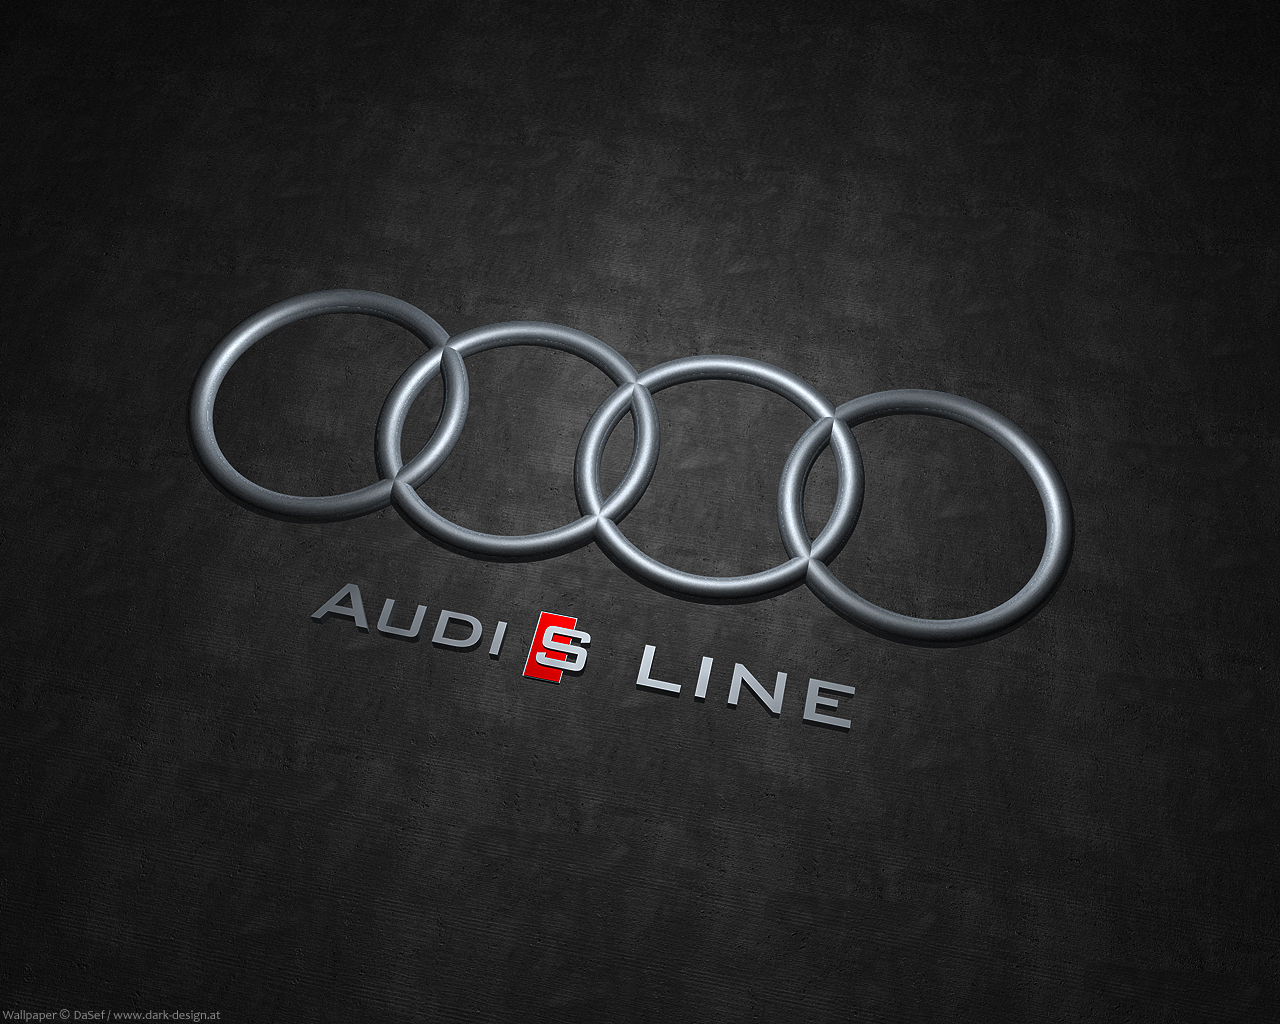 Audi S-Line by DaSef on DeviantArt